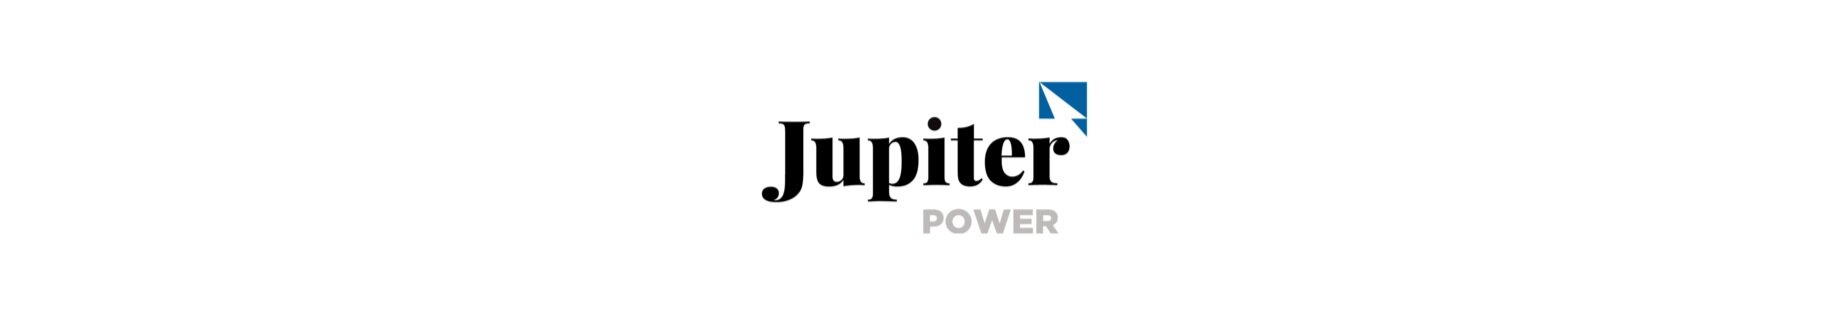 Jupiter Power